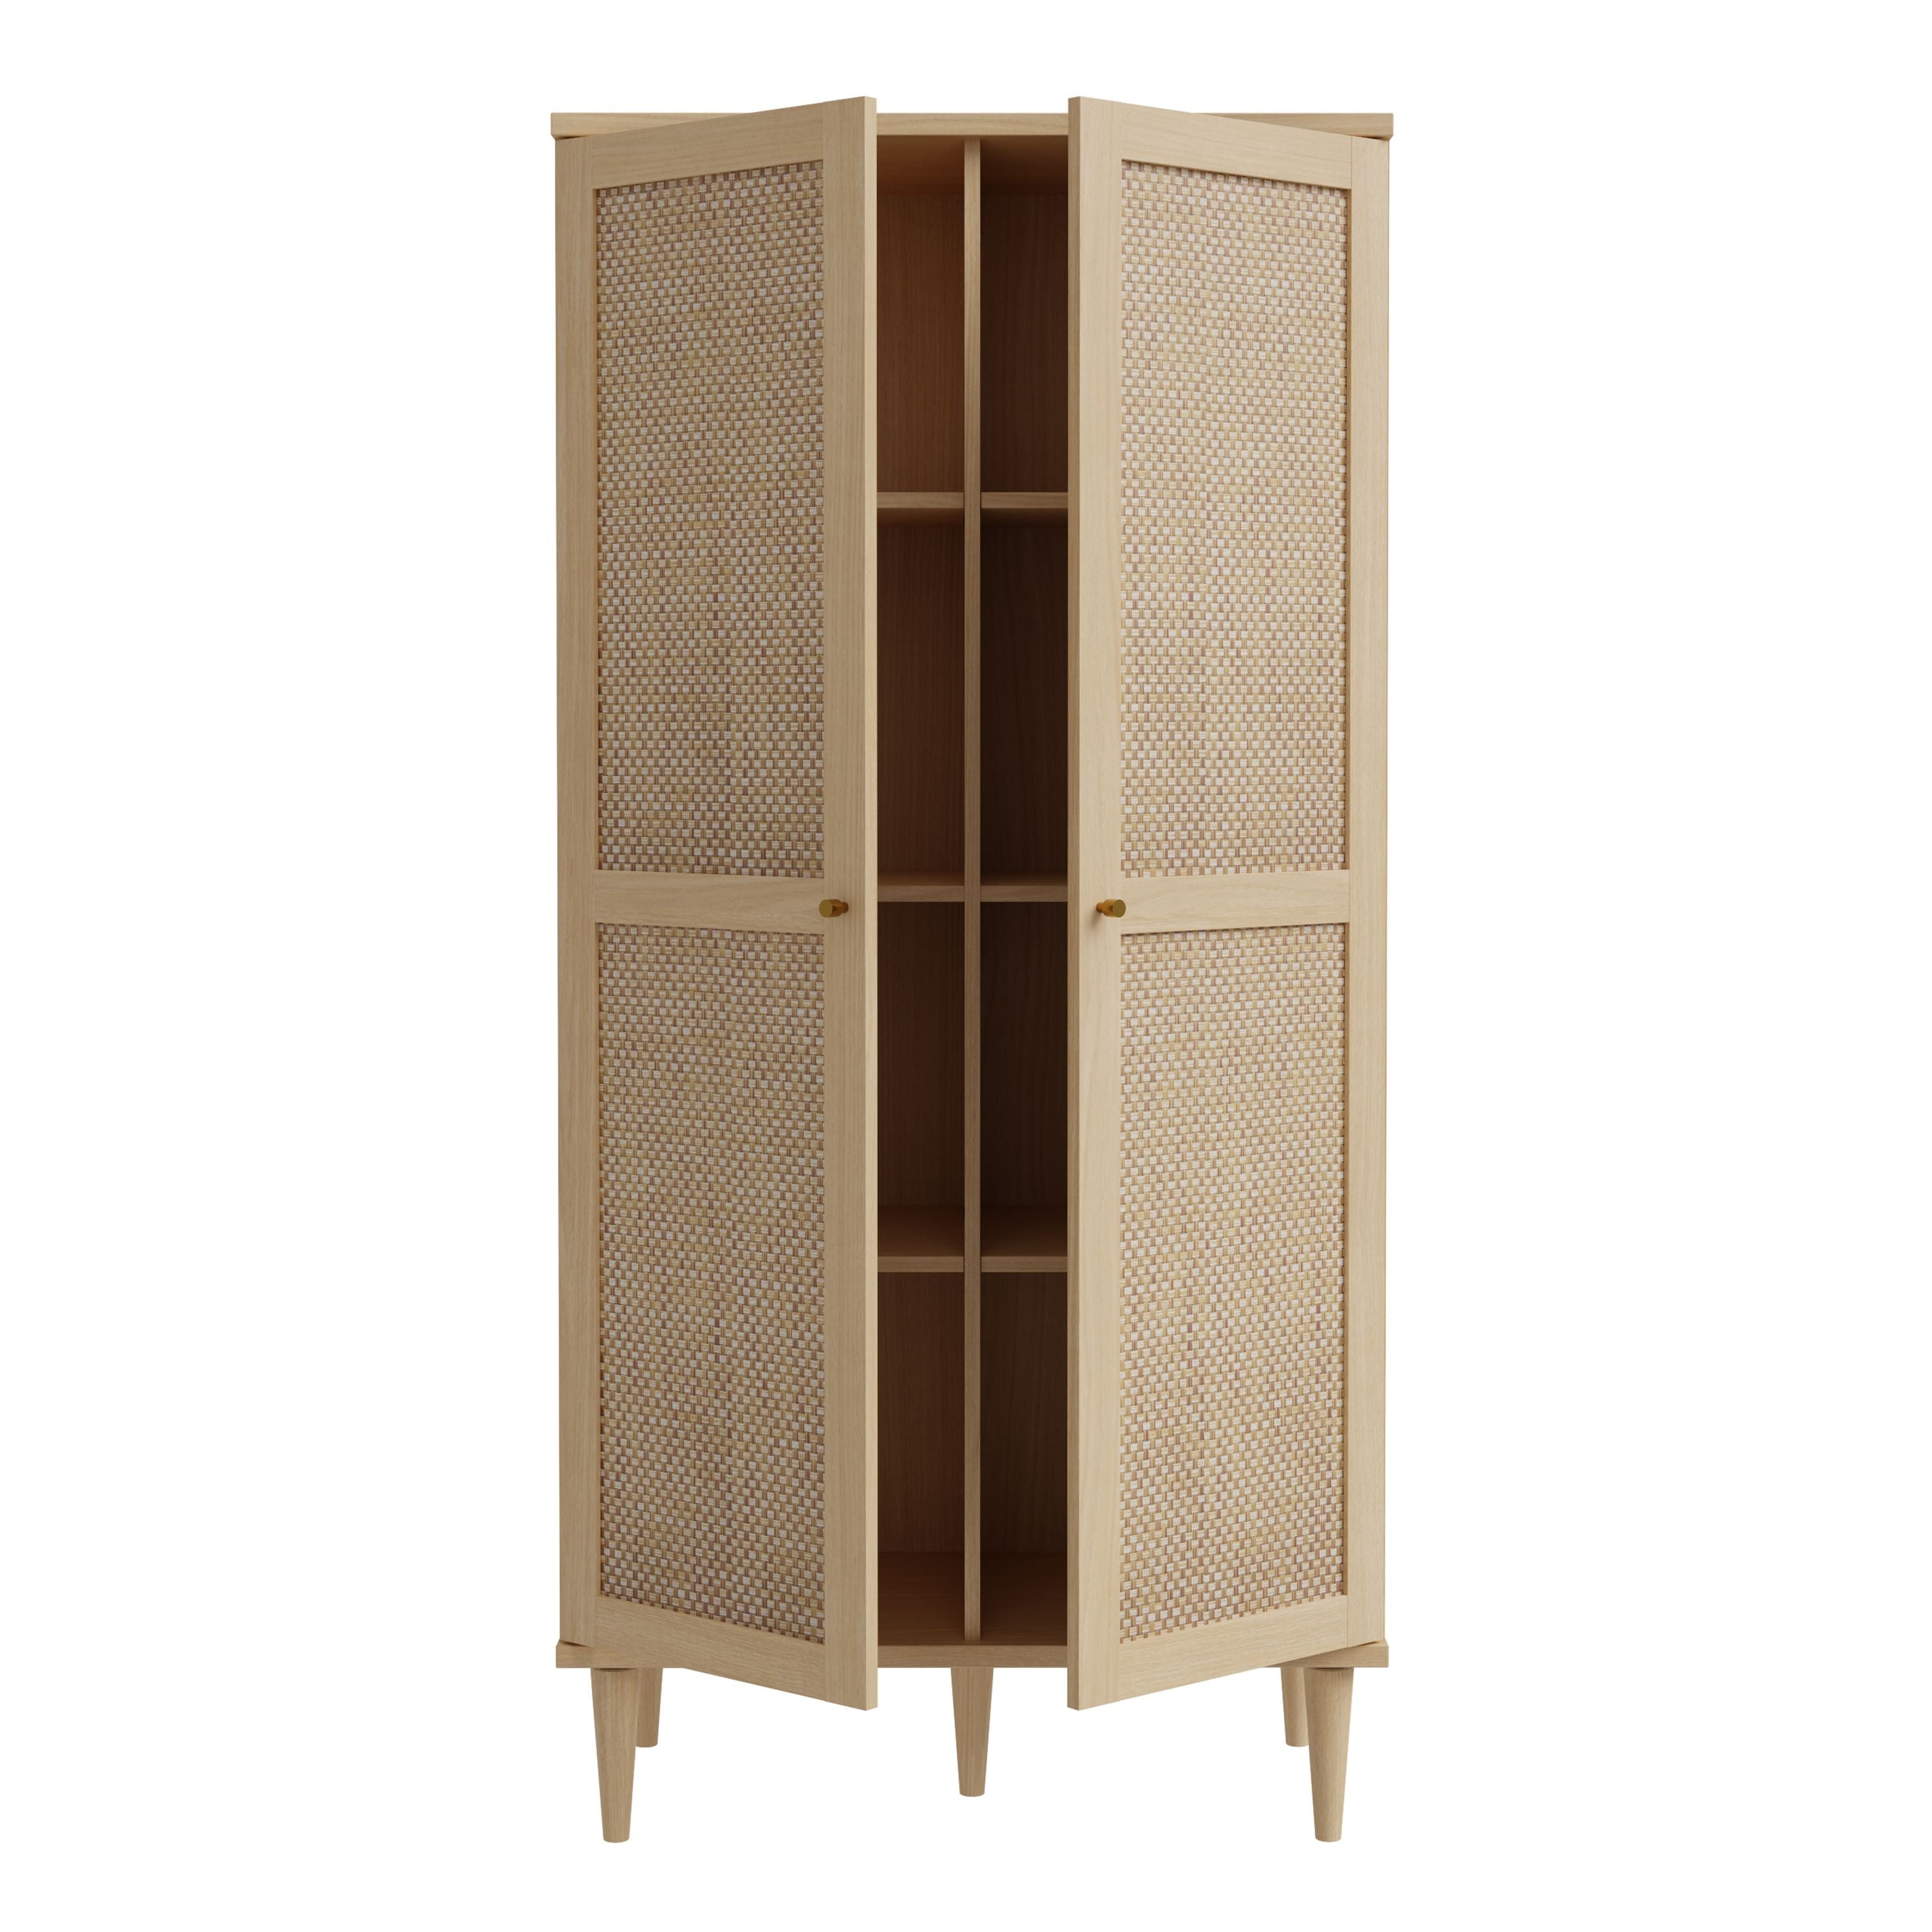 Calasetta 2 Door Display Cabinet in Rattan Furniture To Go Ltd